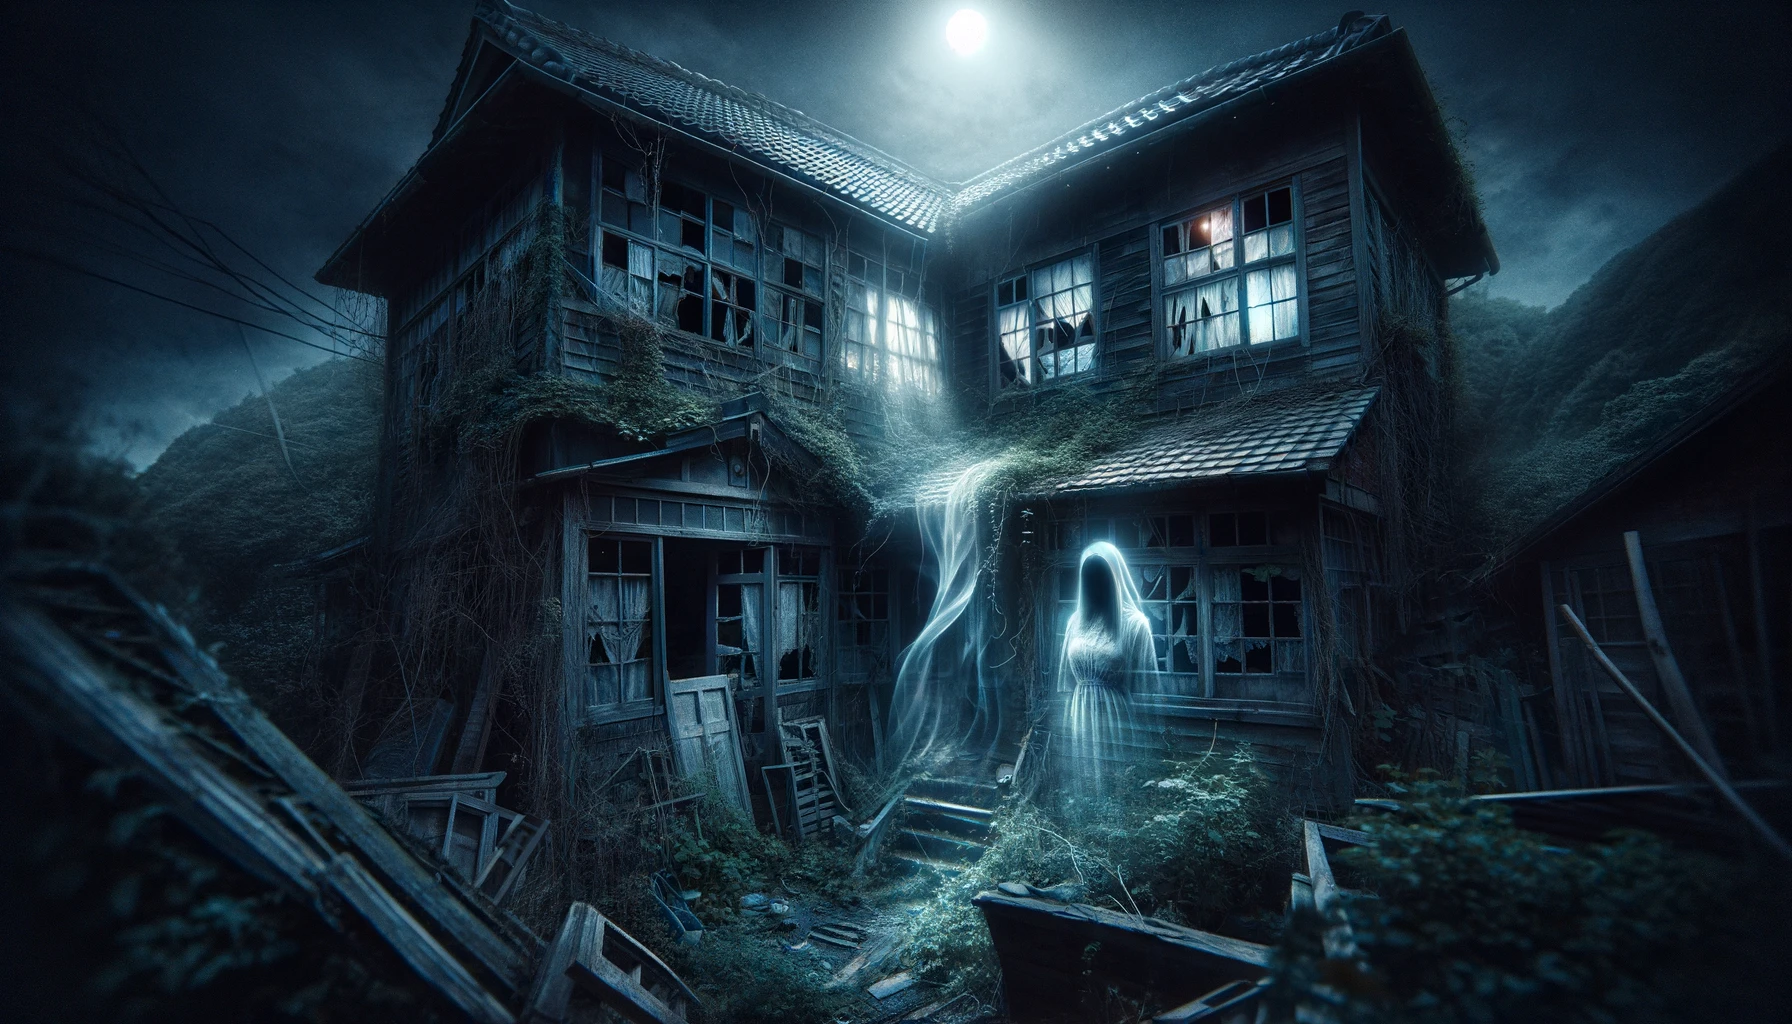 延岡市の廃屋に現れる女性の怨霊。壊れた窓と荒れた植物に囲まれた不気味な家の中で、悲しみを帯びた幽霊が月光に照らされる。